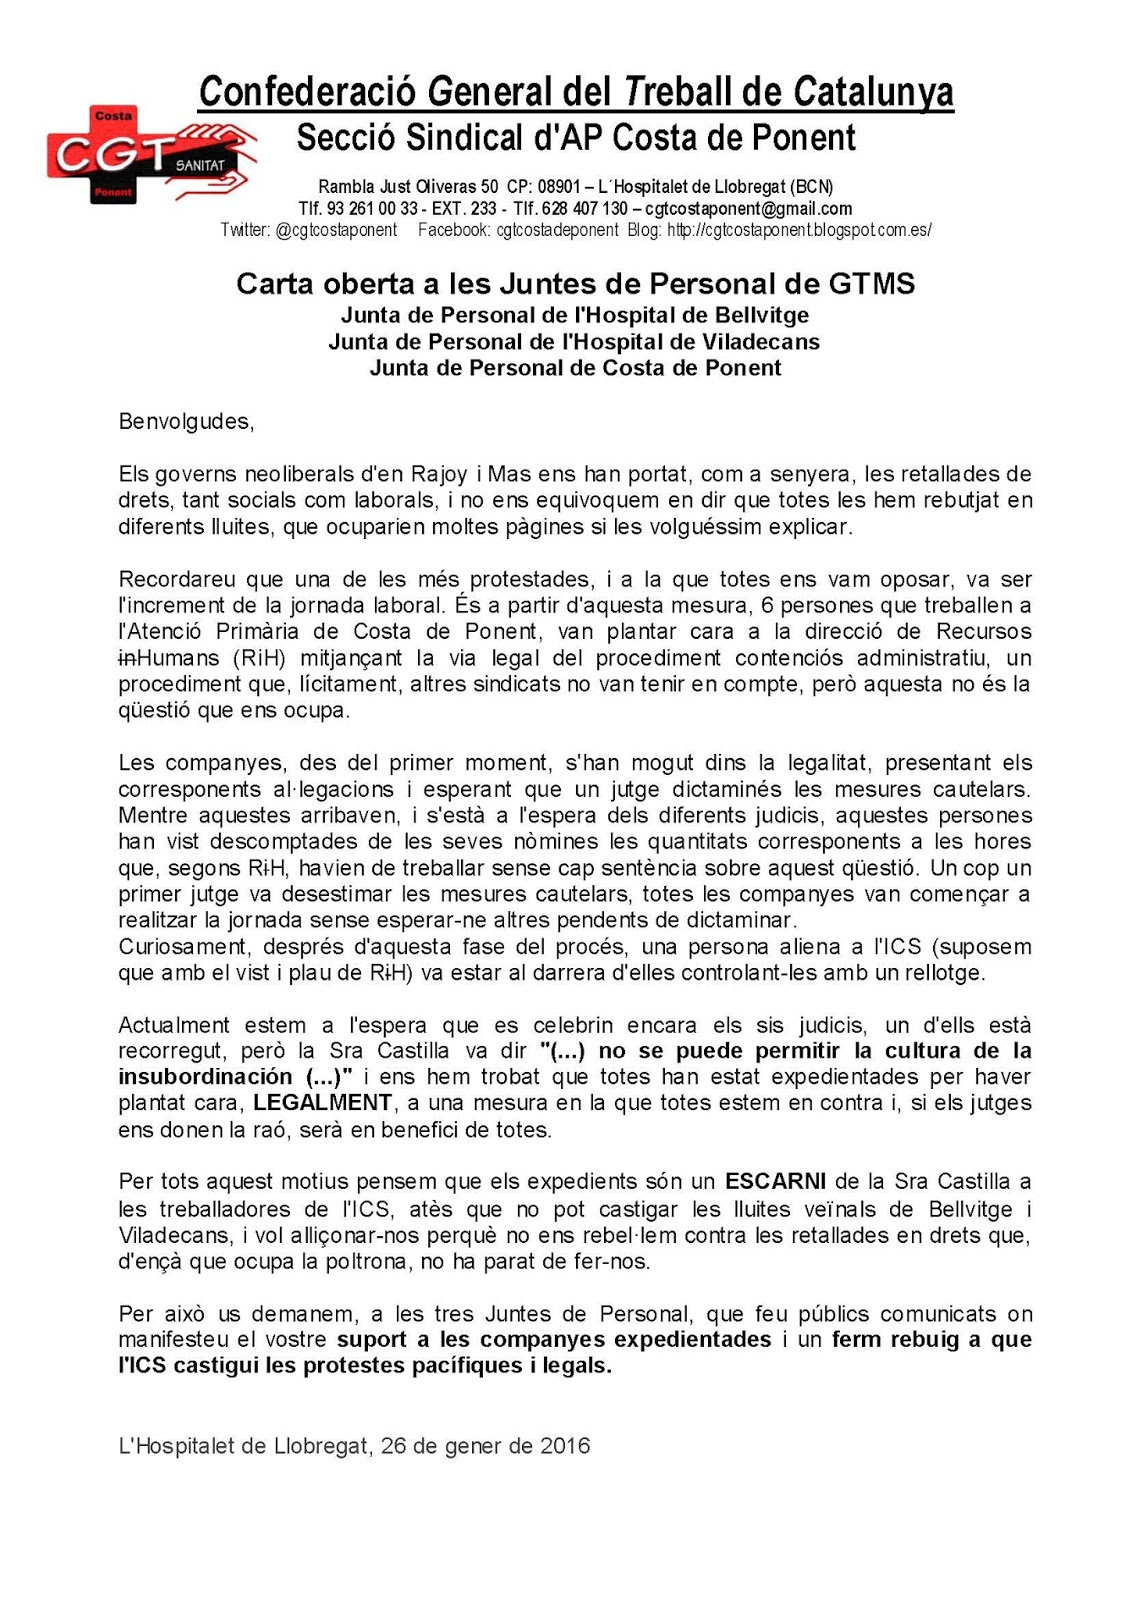 CGT COSTA PONENT - Secció Sindical: Carta oberta a les 